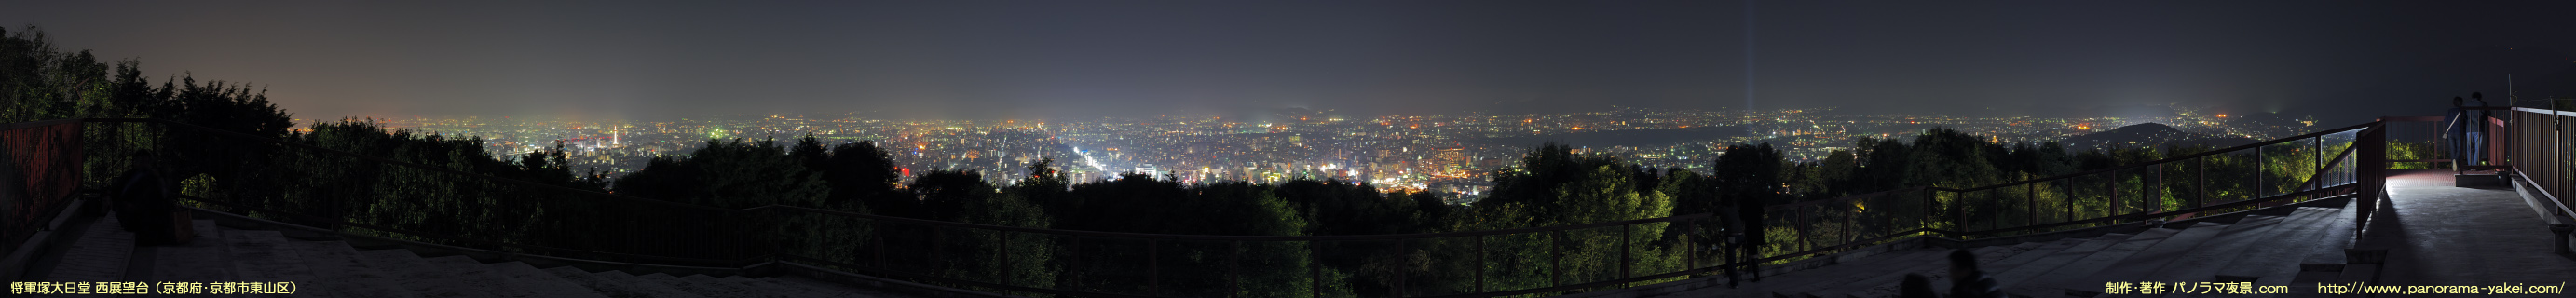 将軍塚大日堂 「将軍塚庭園ライトアップ」 ～西展望台からのパノラマ夜景写真～